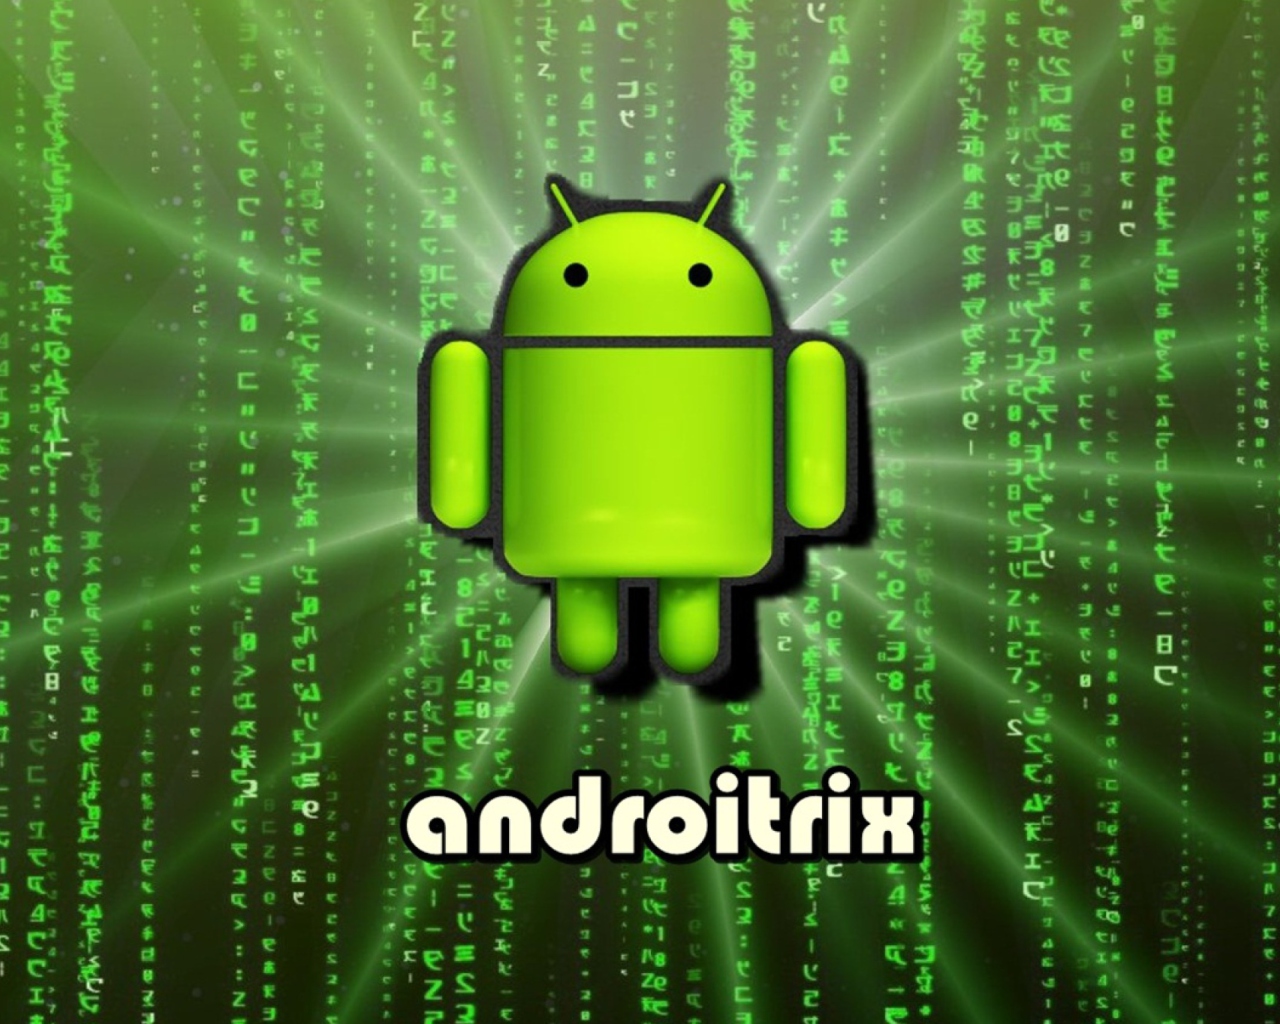 Android Matrix wallpaper 1280x1024